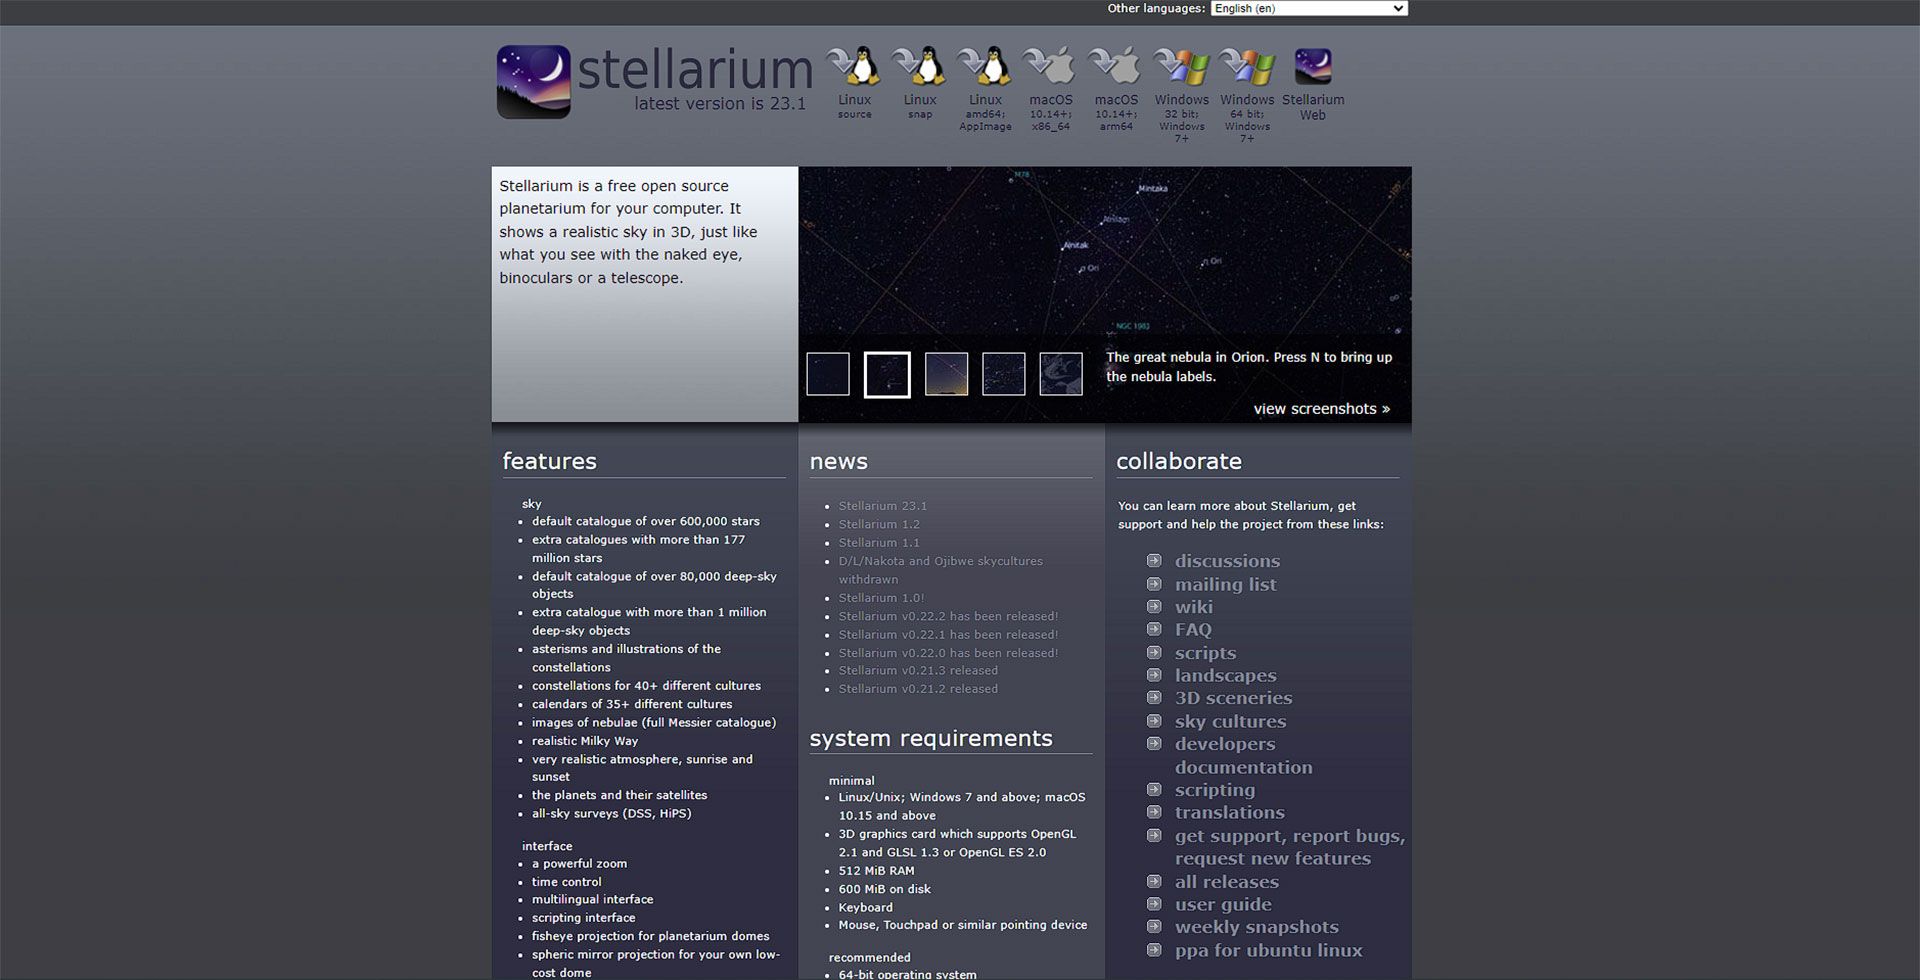 صفحه سایت Stellarium مملو از اطلاعات و تصاویر مربوط به نجوه